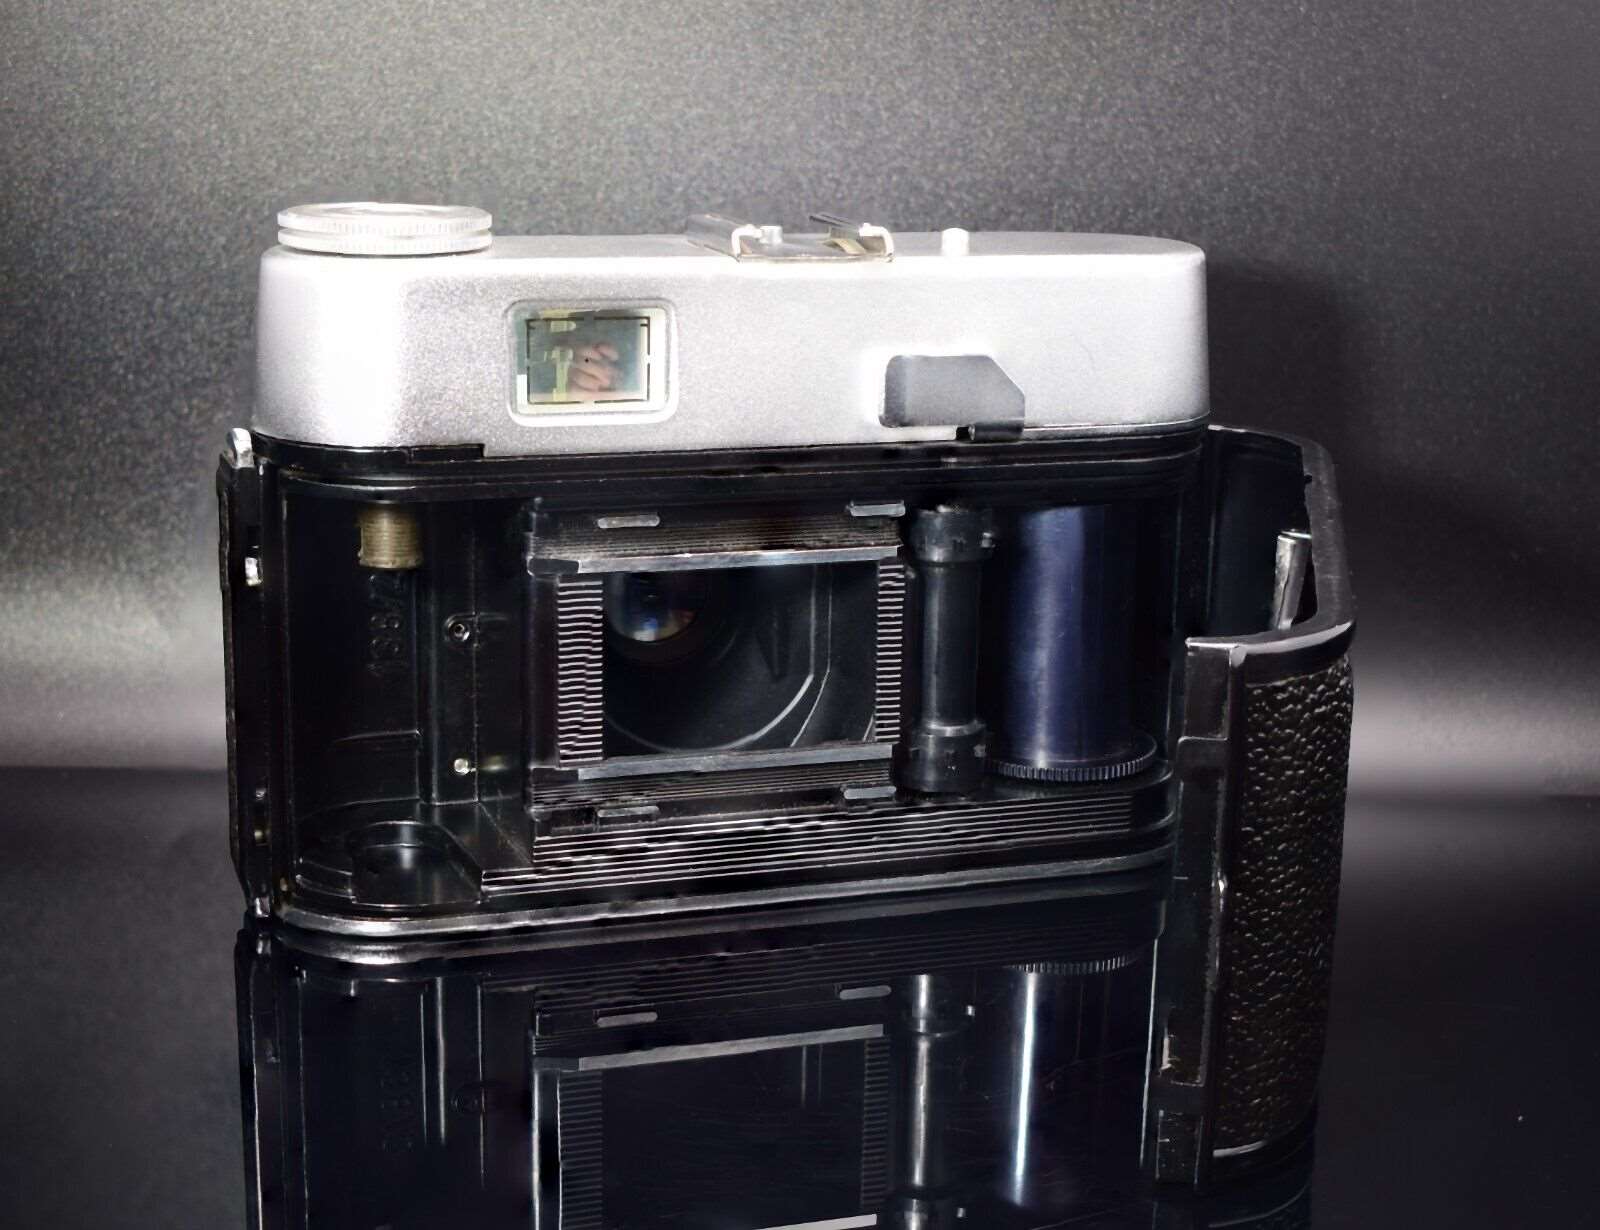 Voigtlander VITORET 35mm Film Camera cw VASKAR f/2.8 50mm Lens & Ever Ready Case